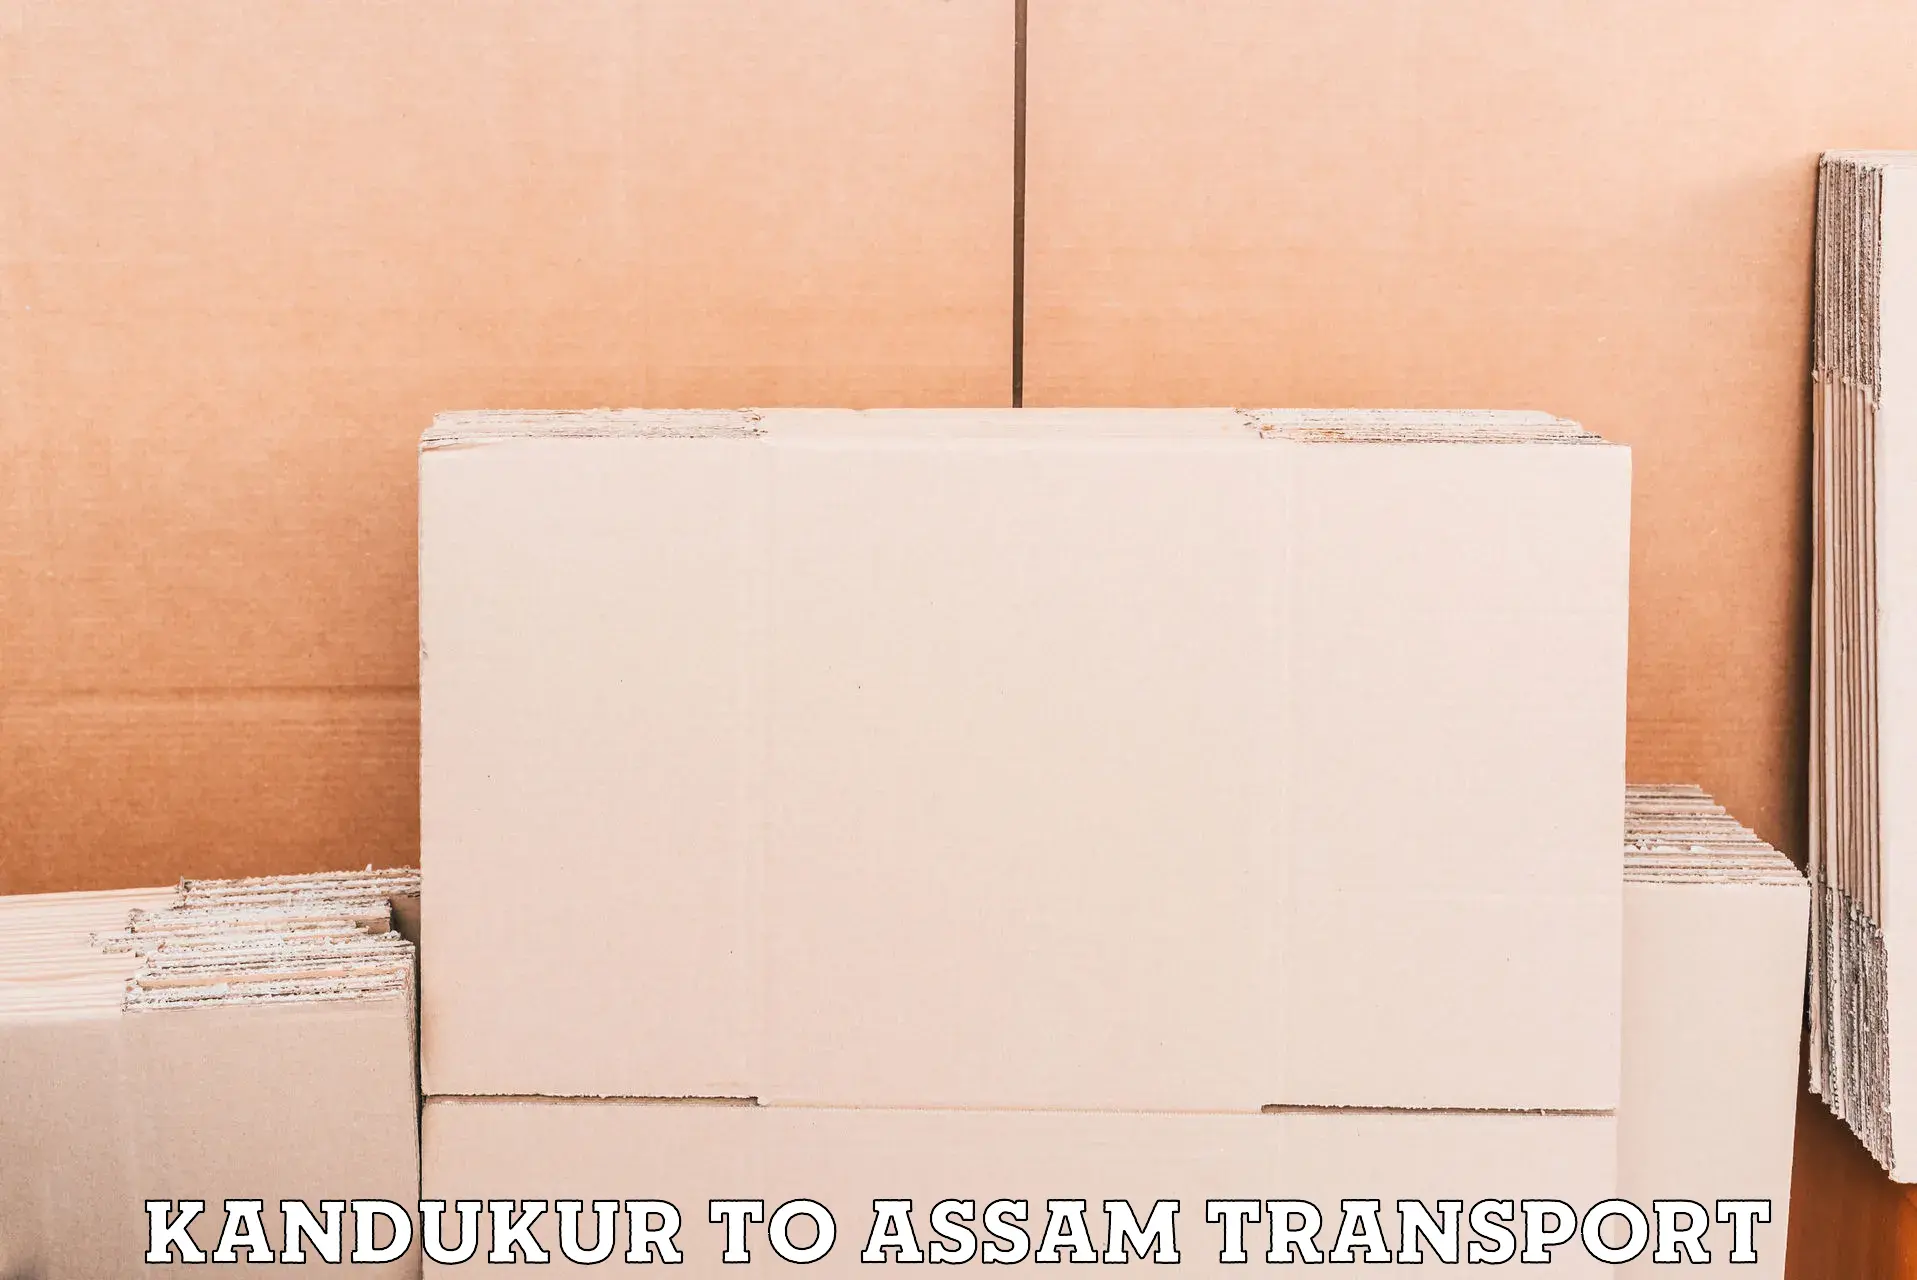 Air freight transport services Kandukur to Assam